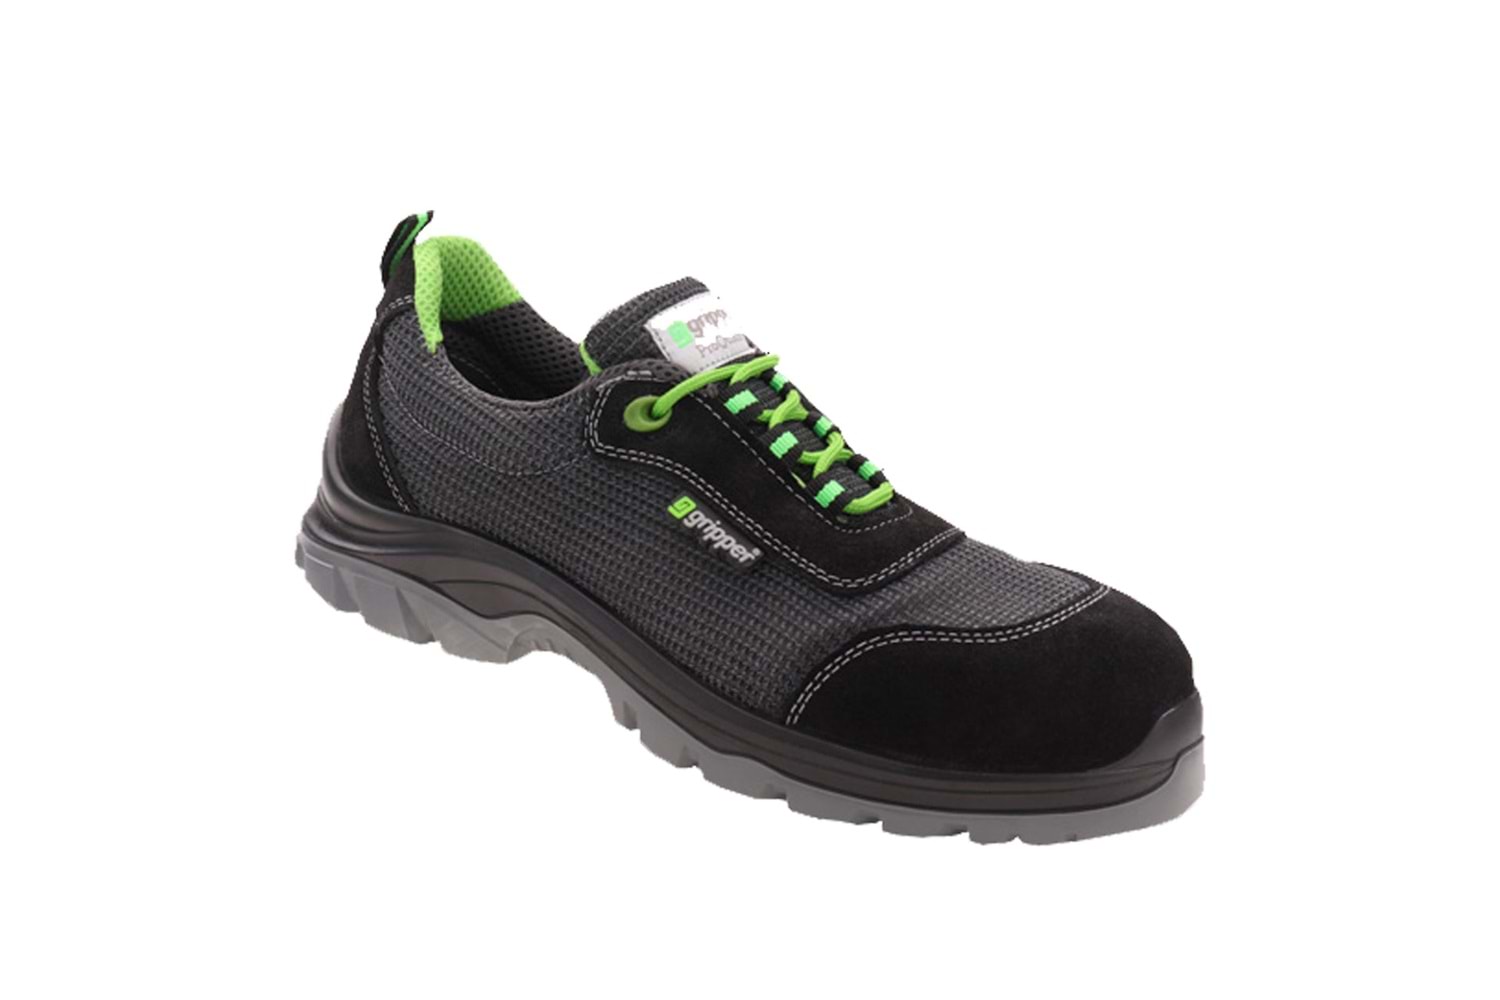 Gripper İş Ayakkabısı - Yukon Gpr-174 S1 Black-Green - 44